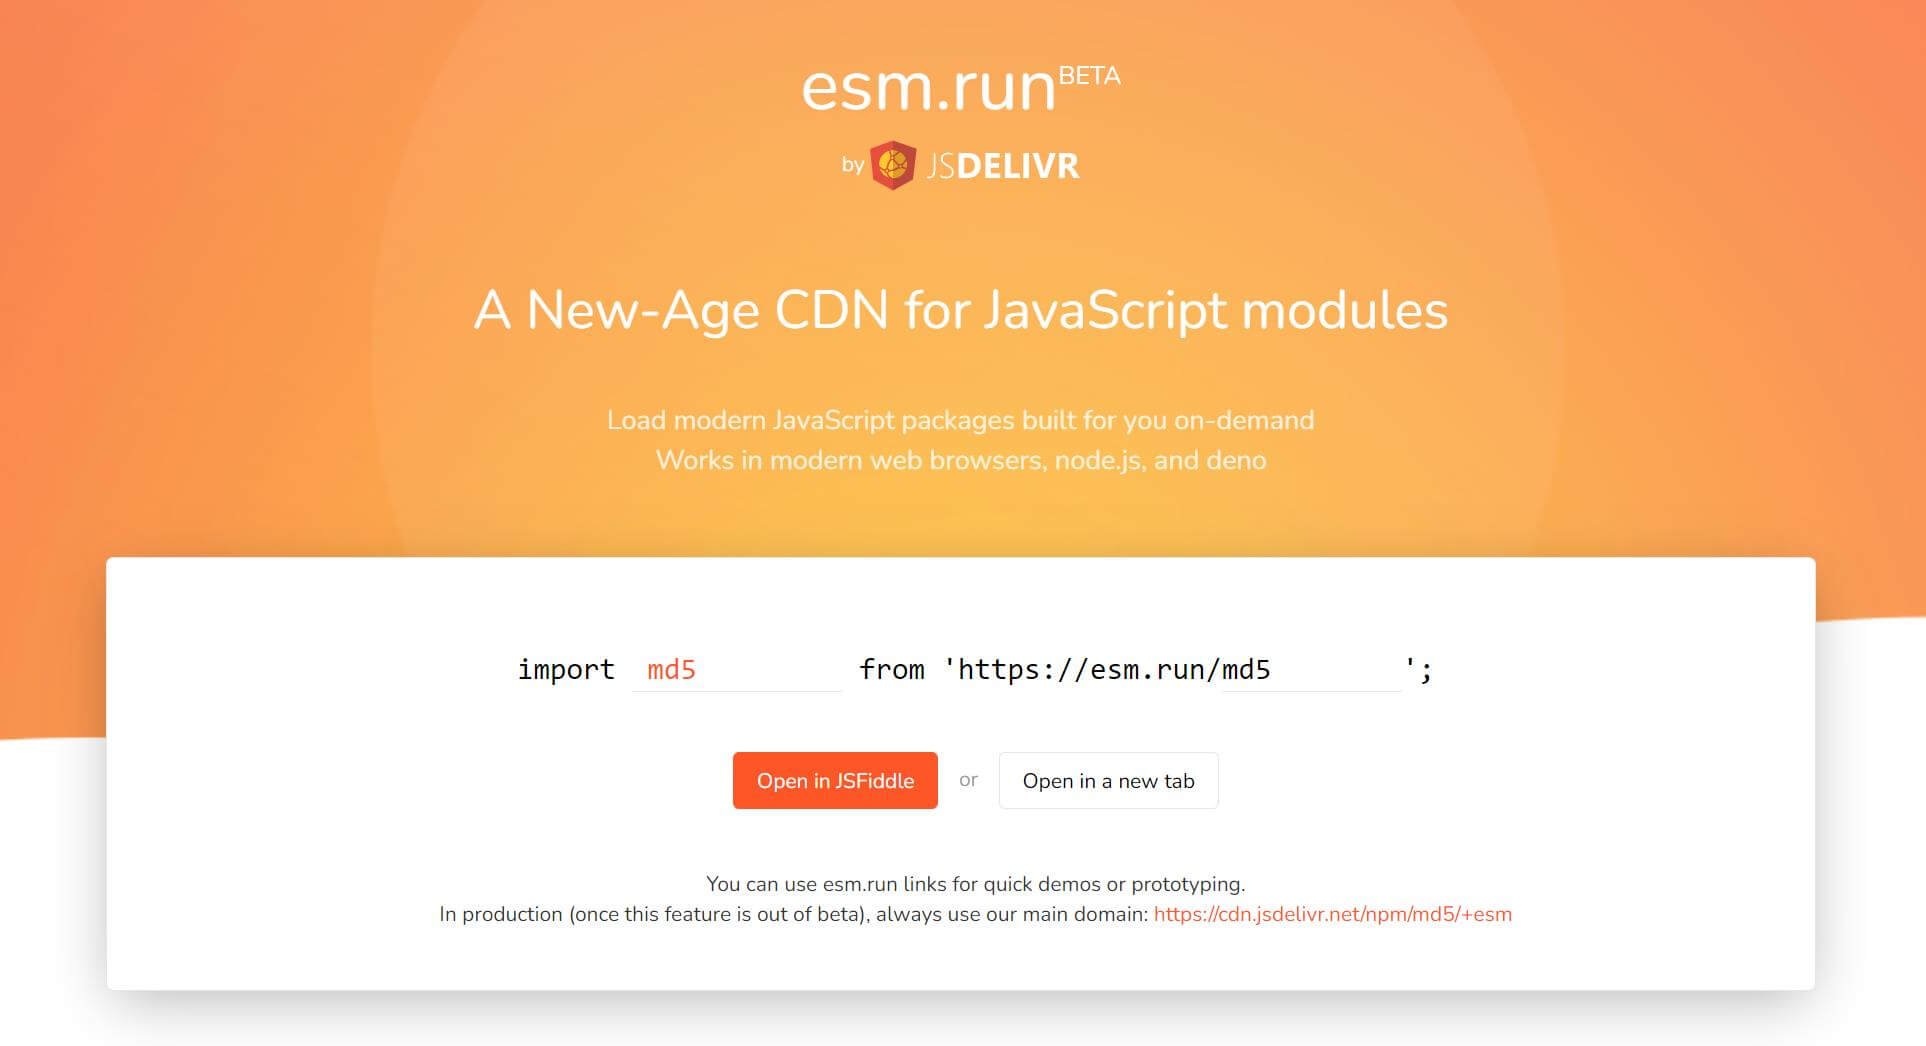 esm.run 网站上的包转换操作界面